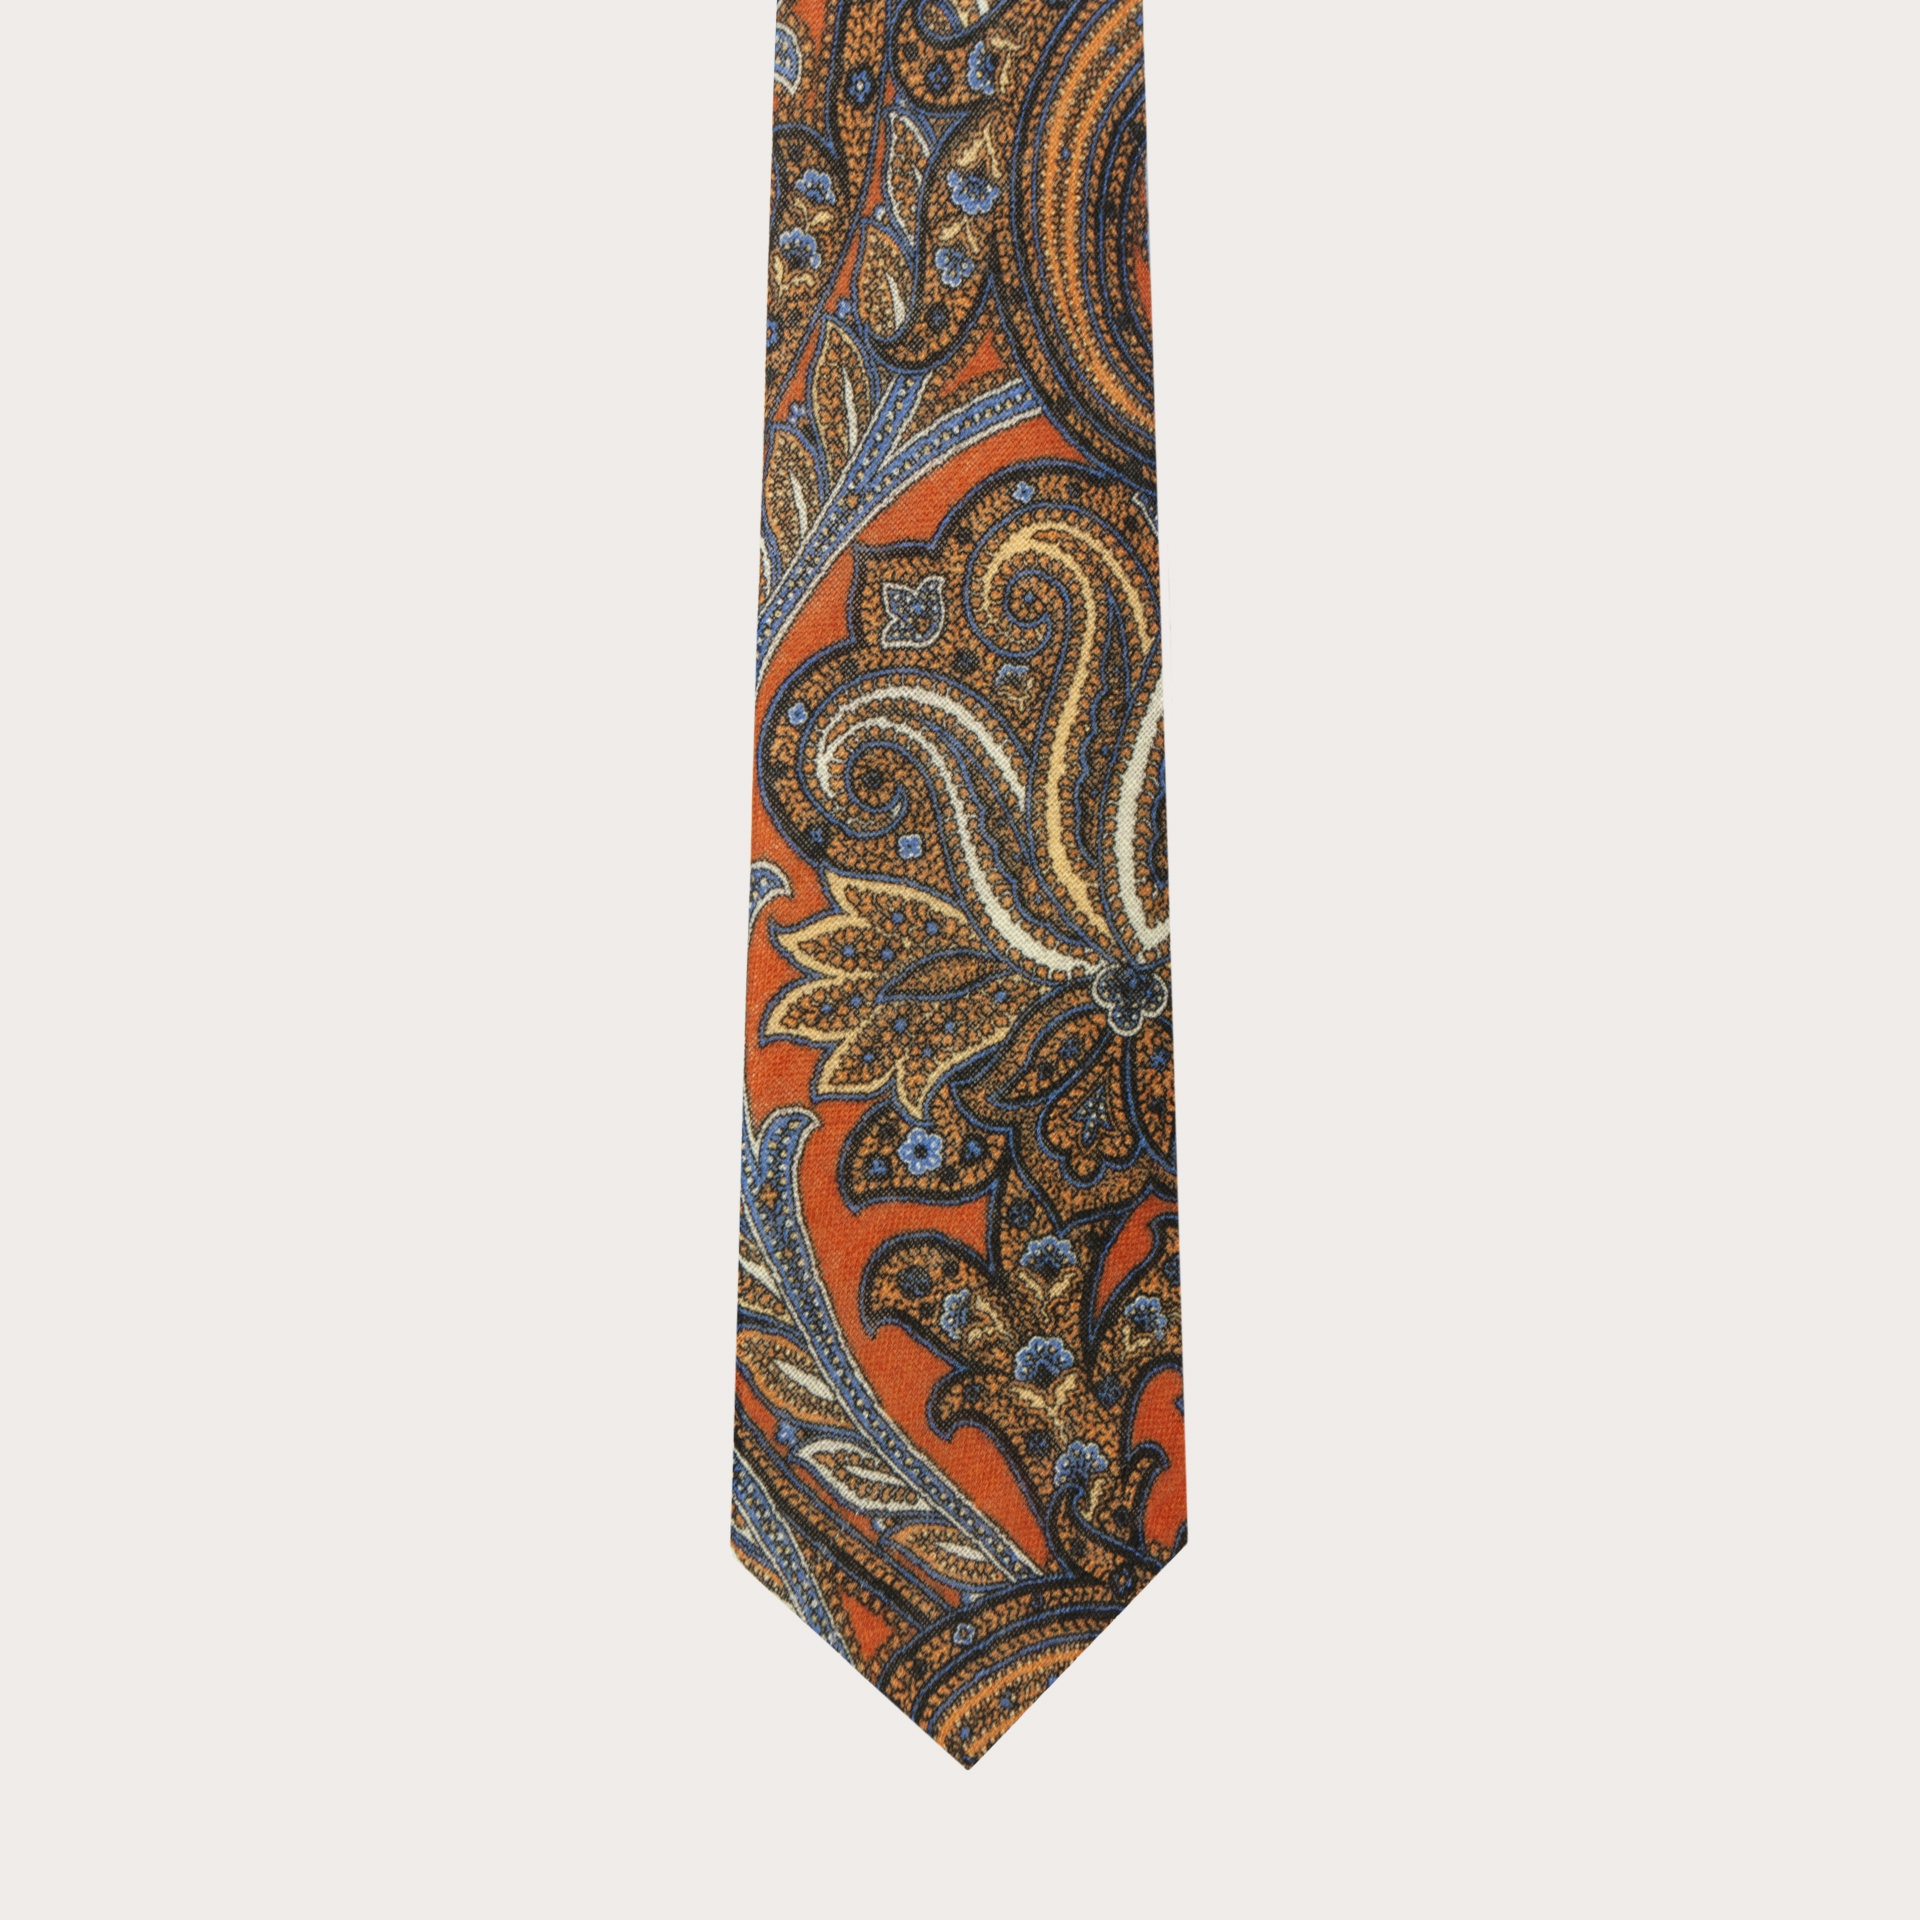 Cravate en laine, motif cachemire orange et bleu